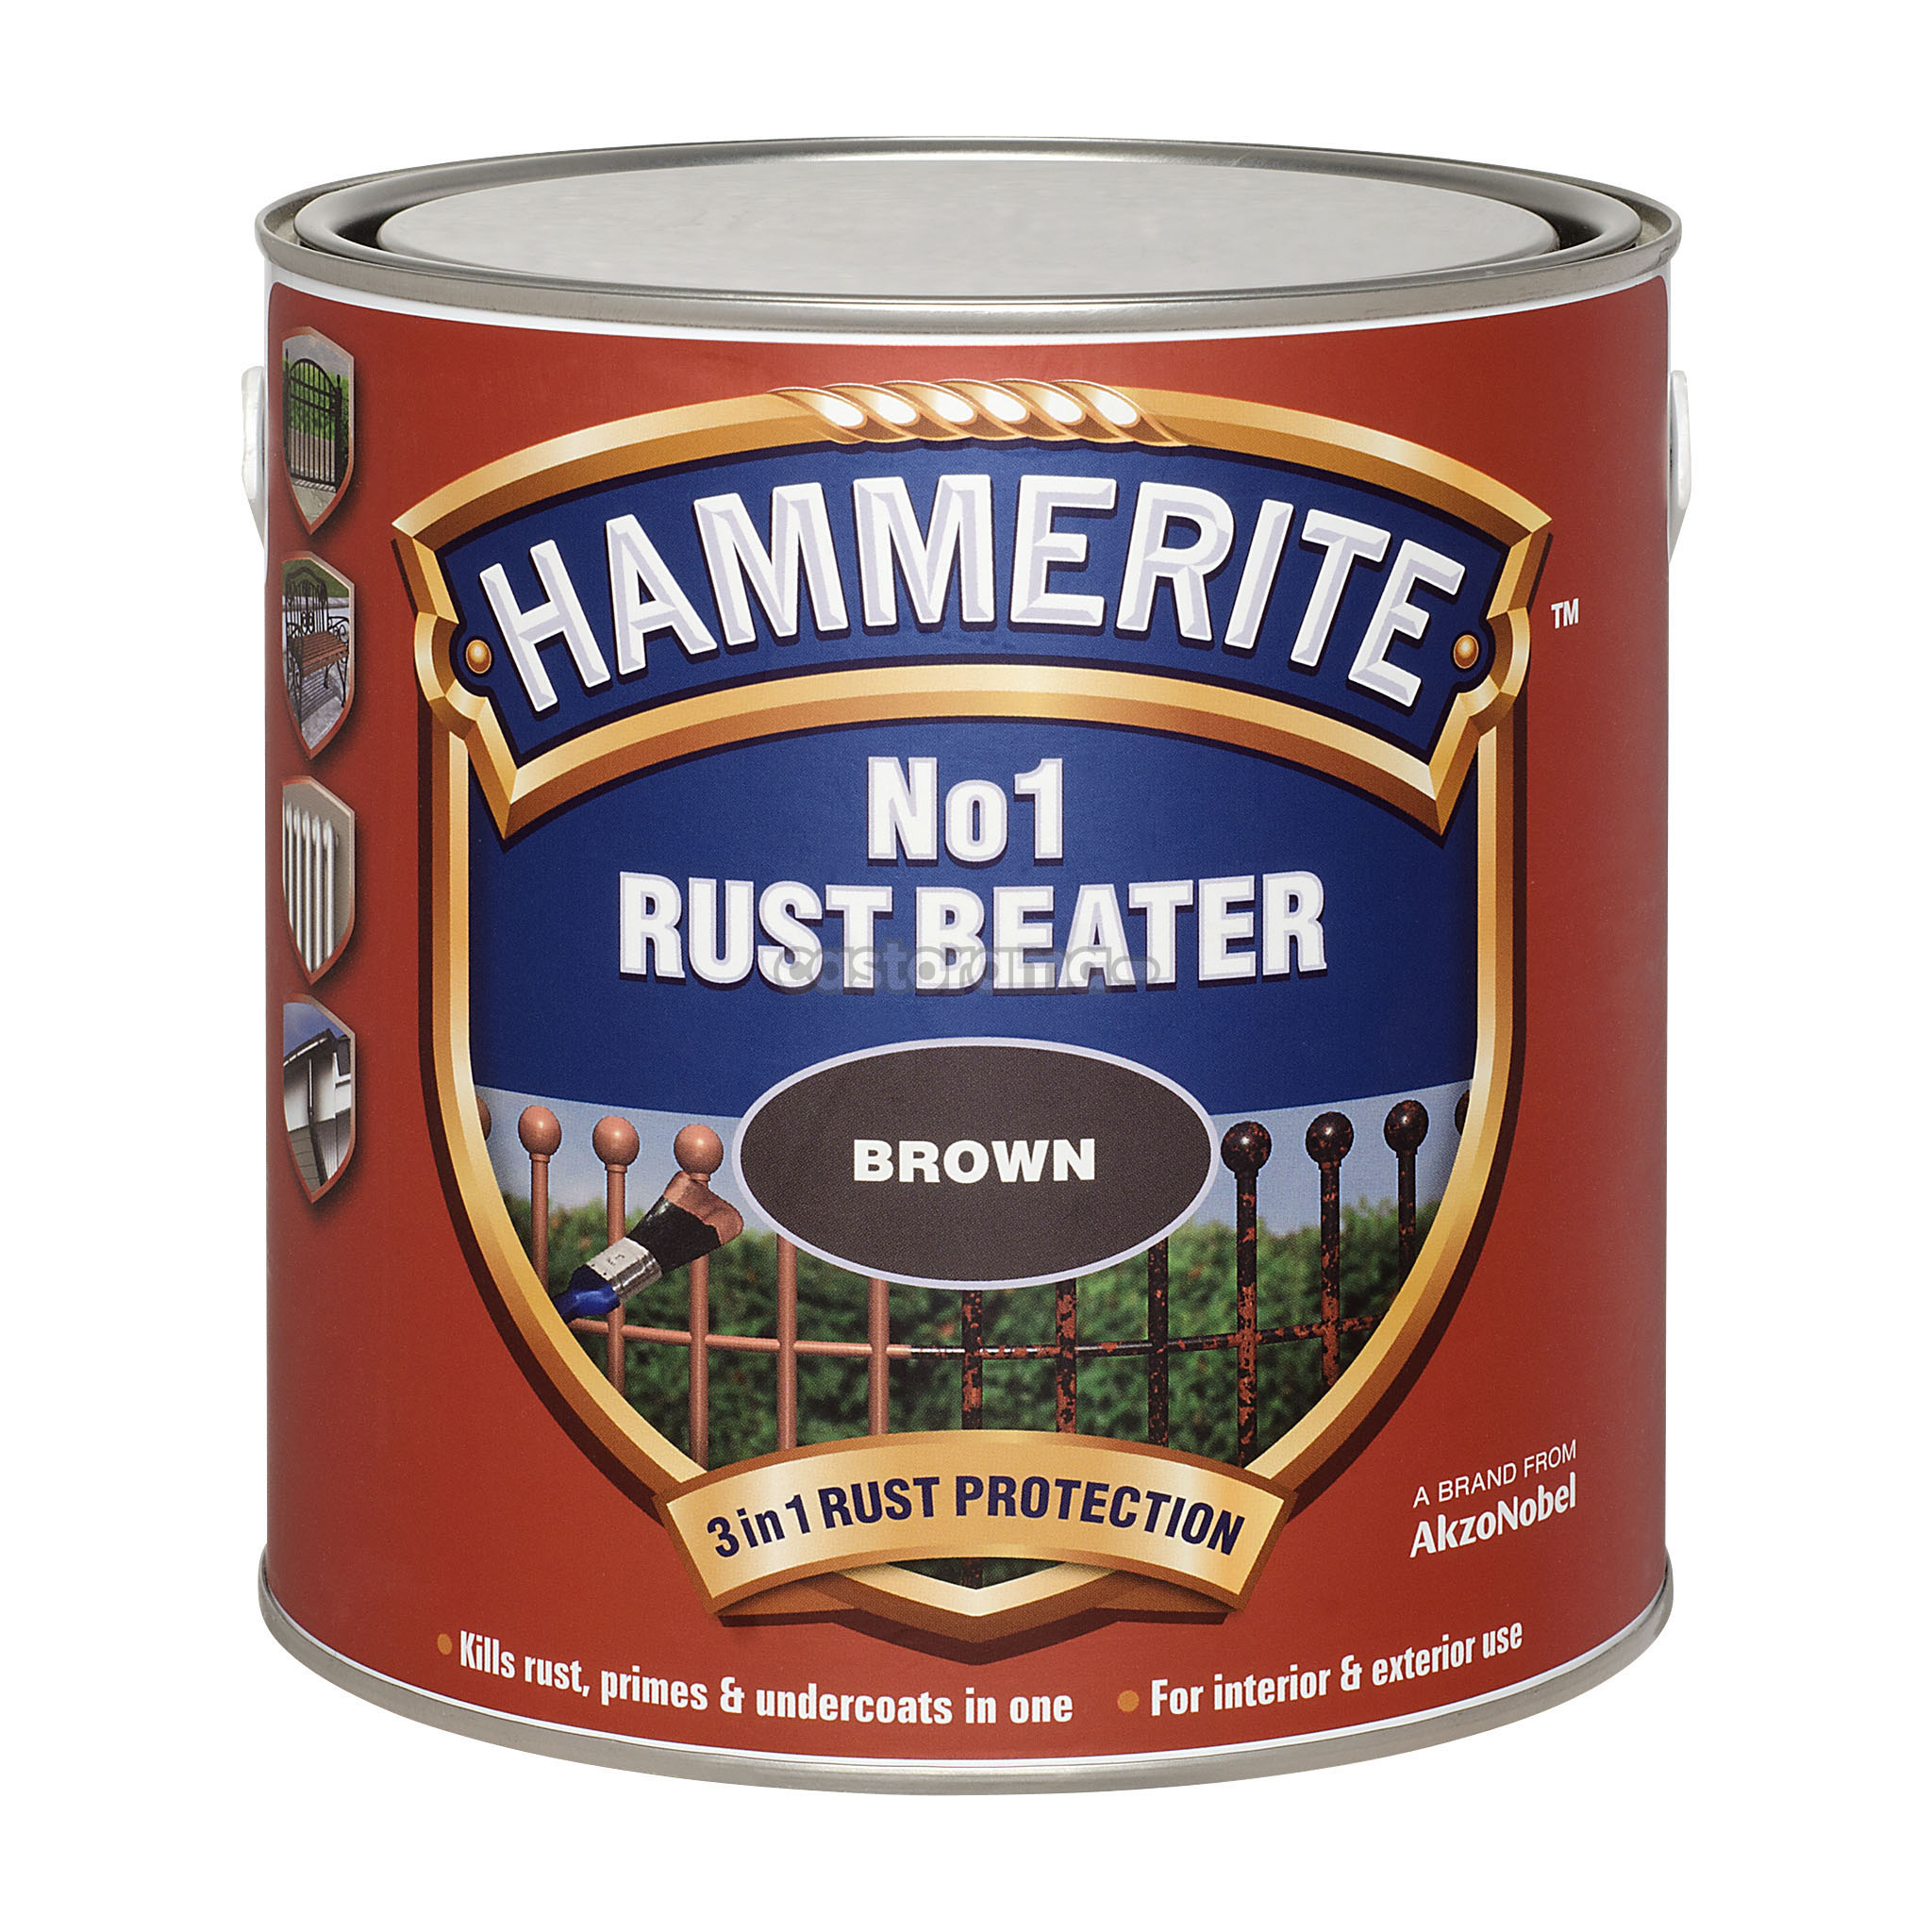 Hammerite rust beater грунт антикоррозийный коричневый для черных металлов (120) фото